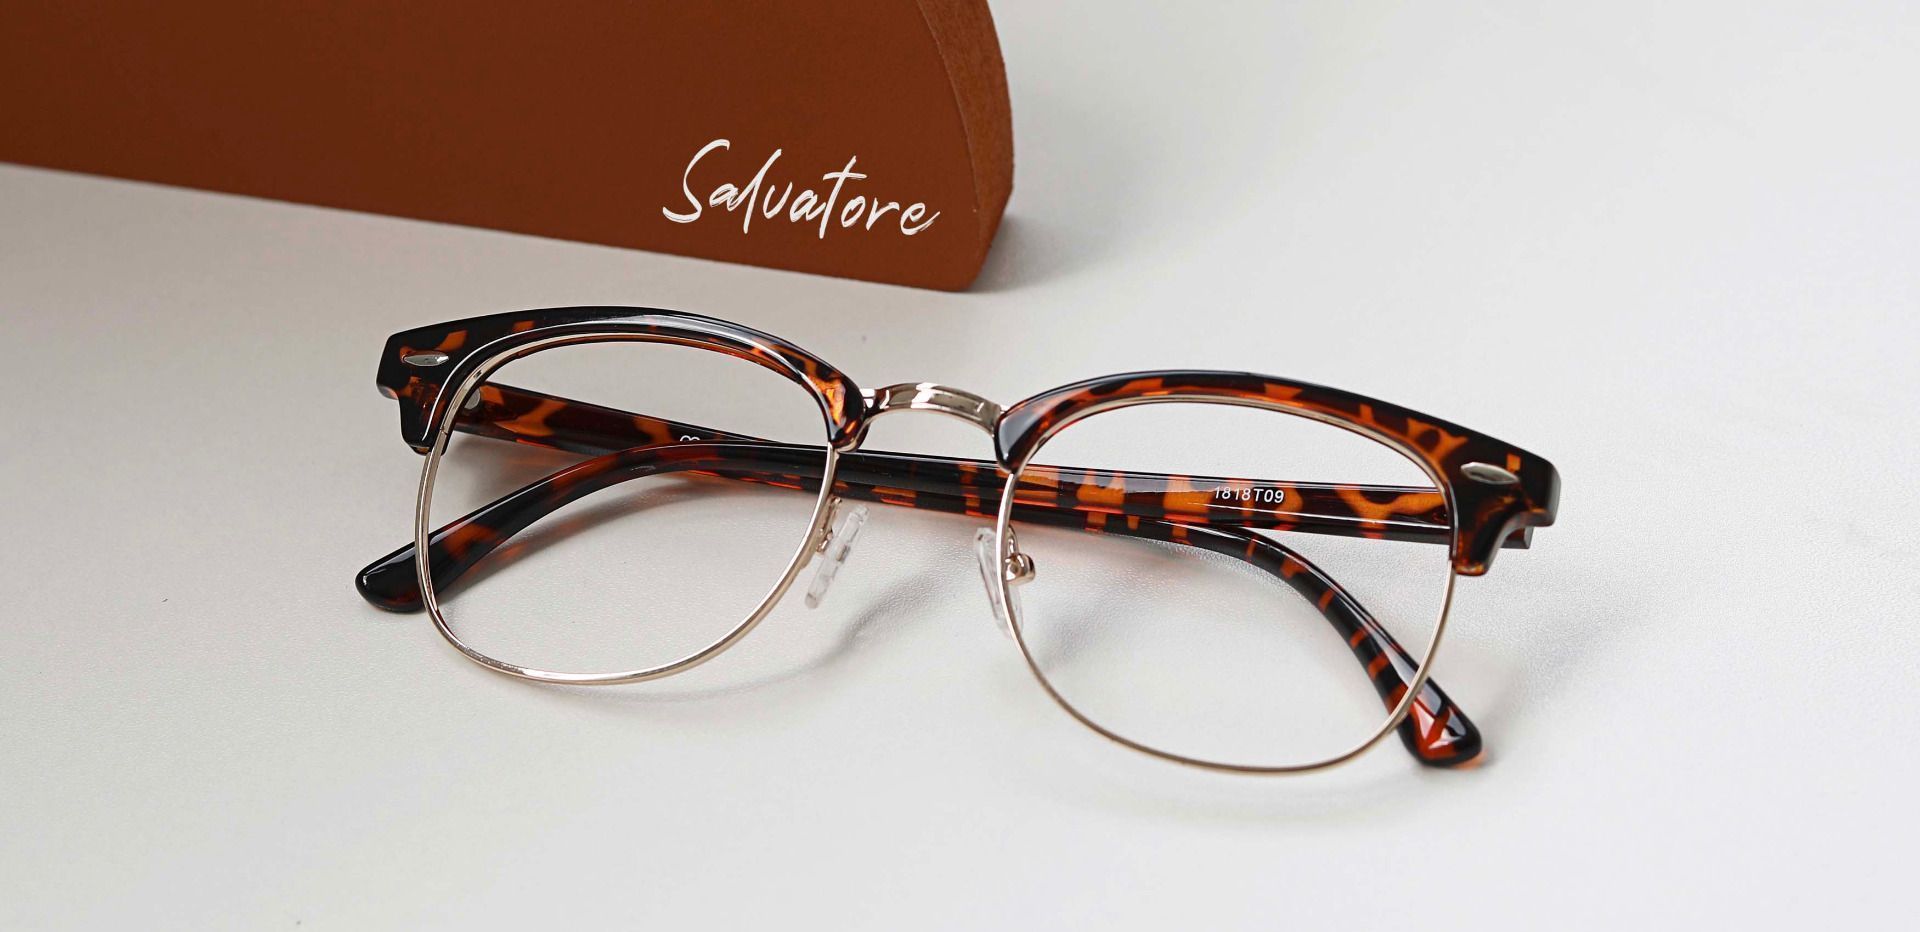 Salvatore Browline Prescription Glasses - Tortoise